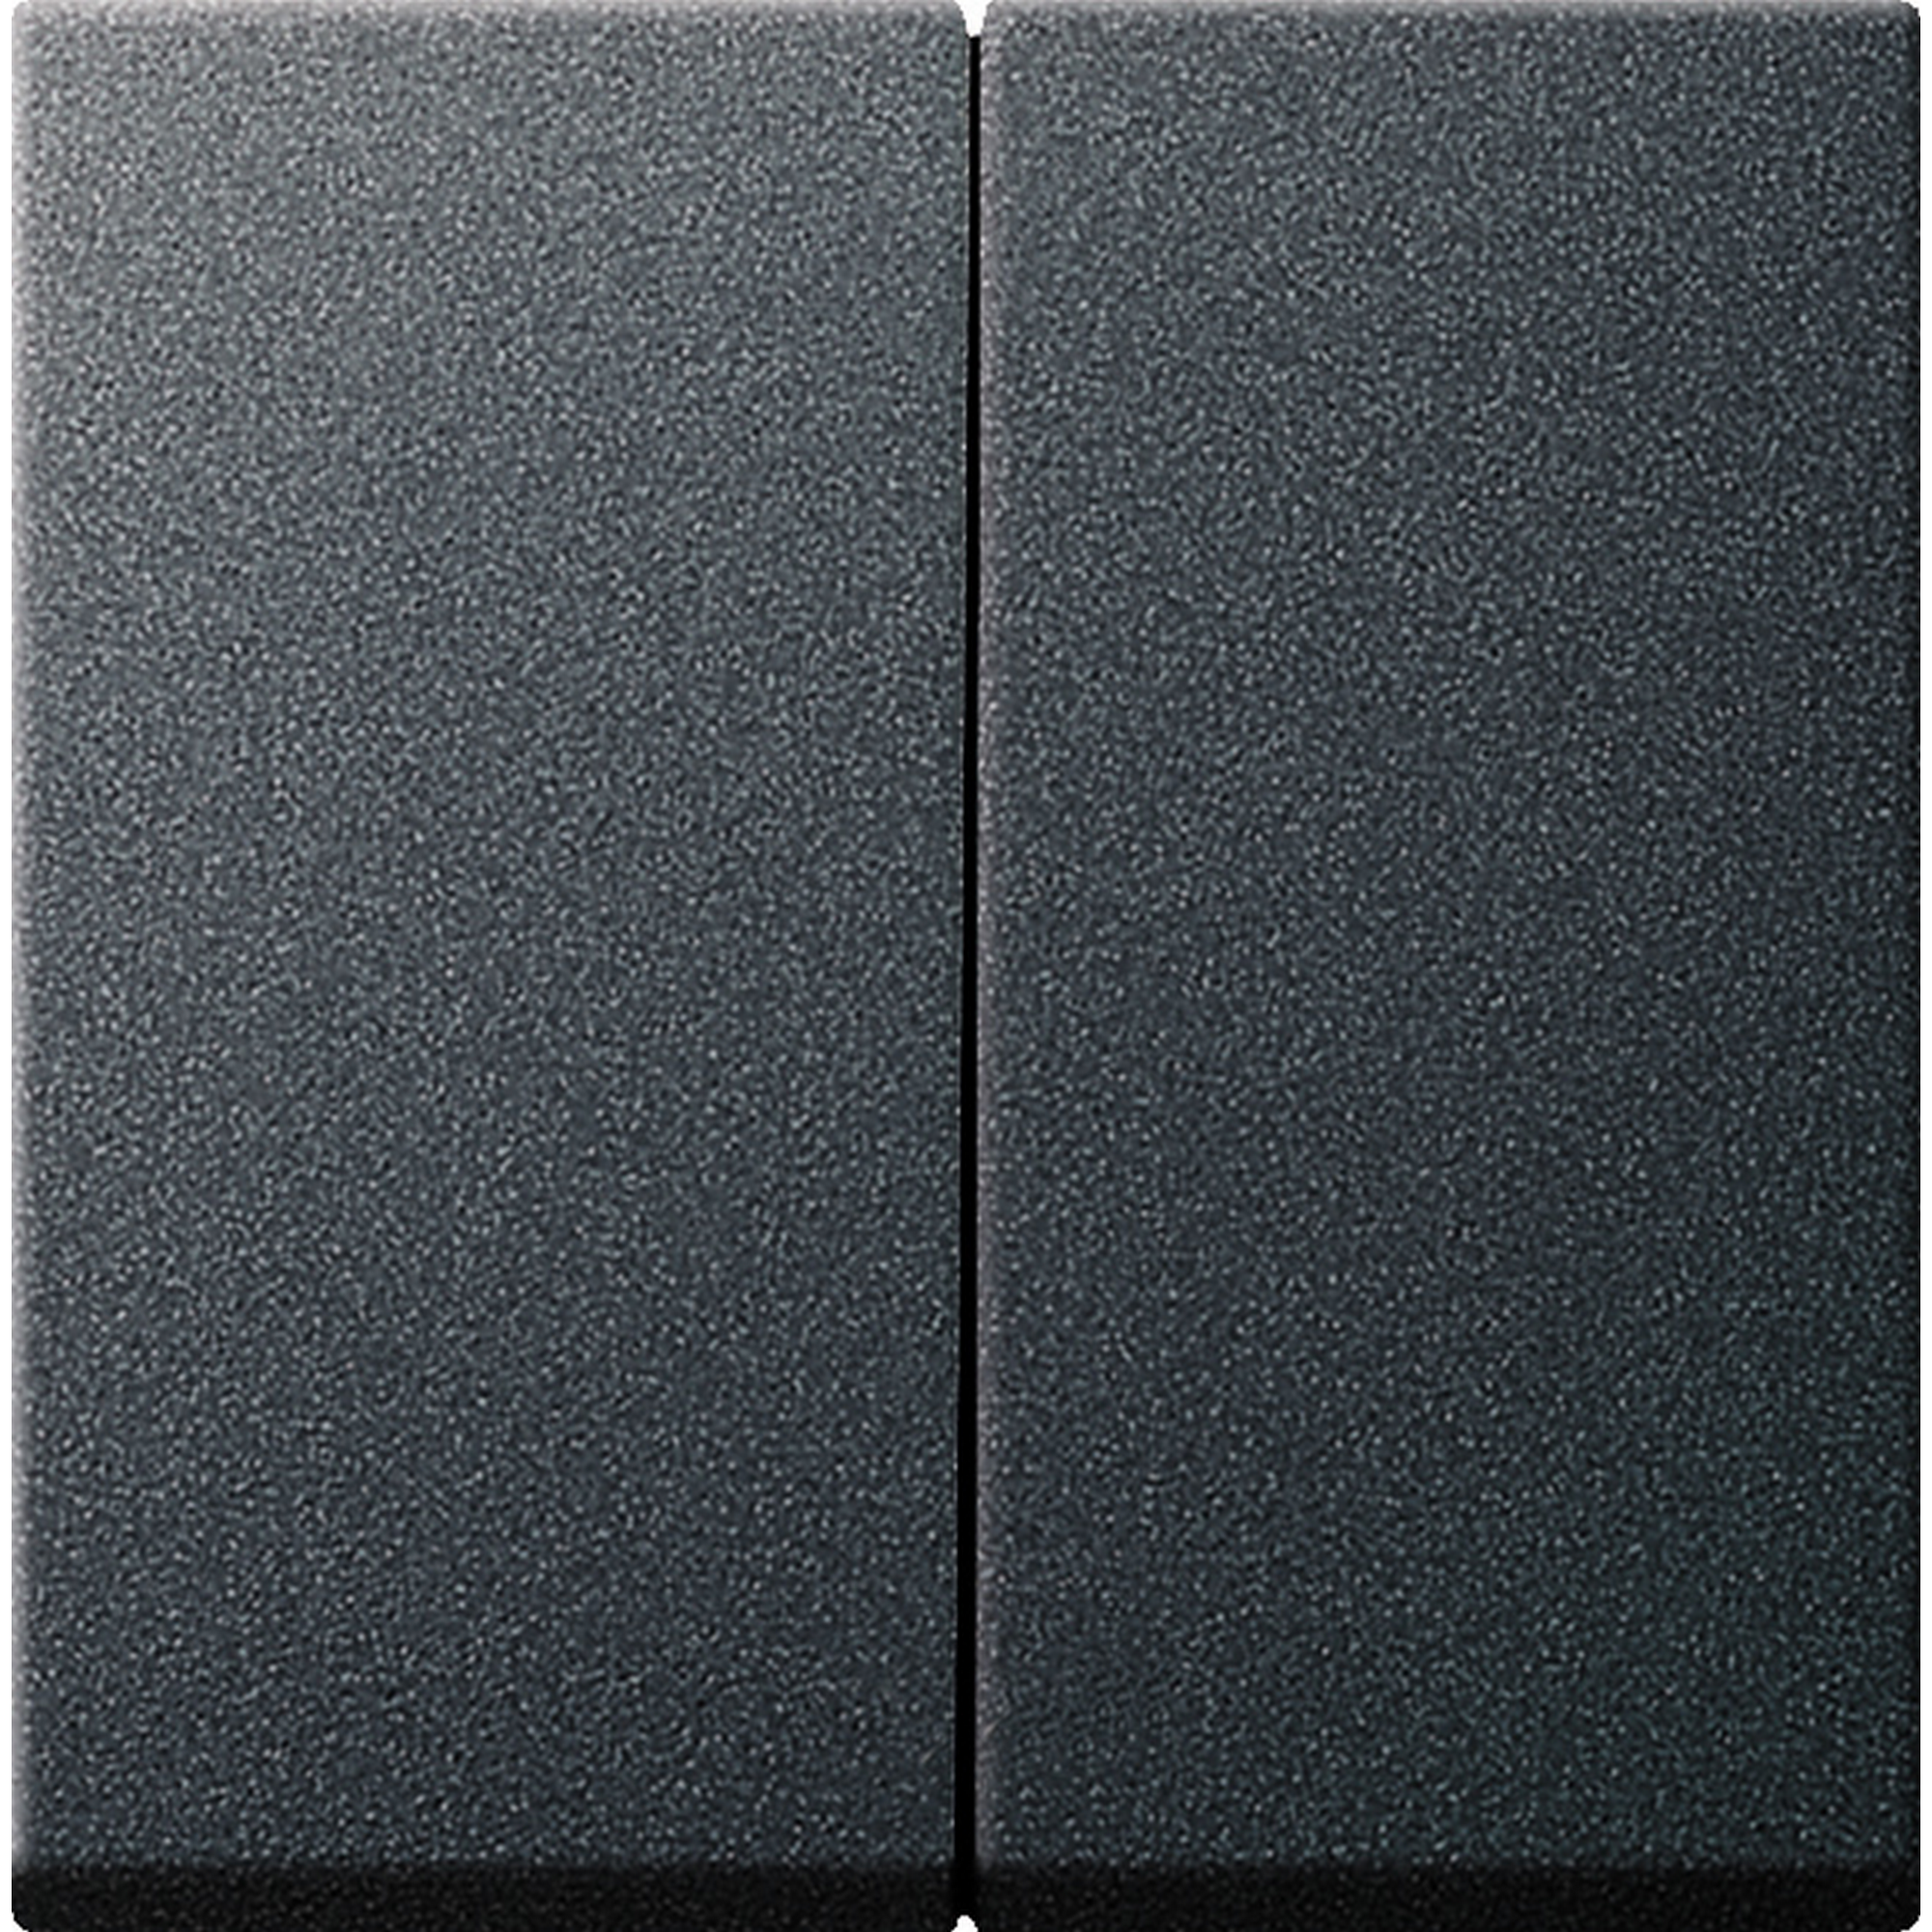 Wippe 'Standard 55' für Serienschalter anthrazit matt 7 x 7 cm + product picture